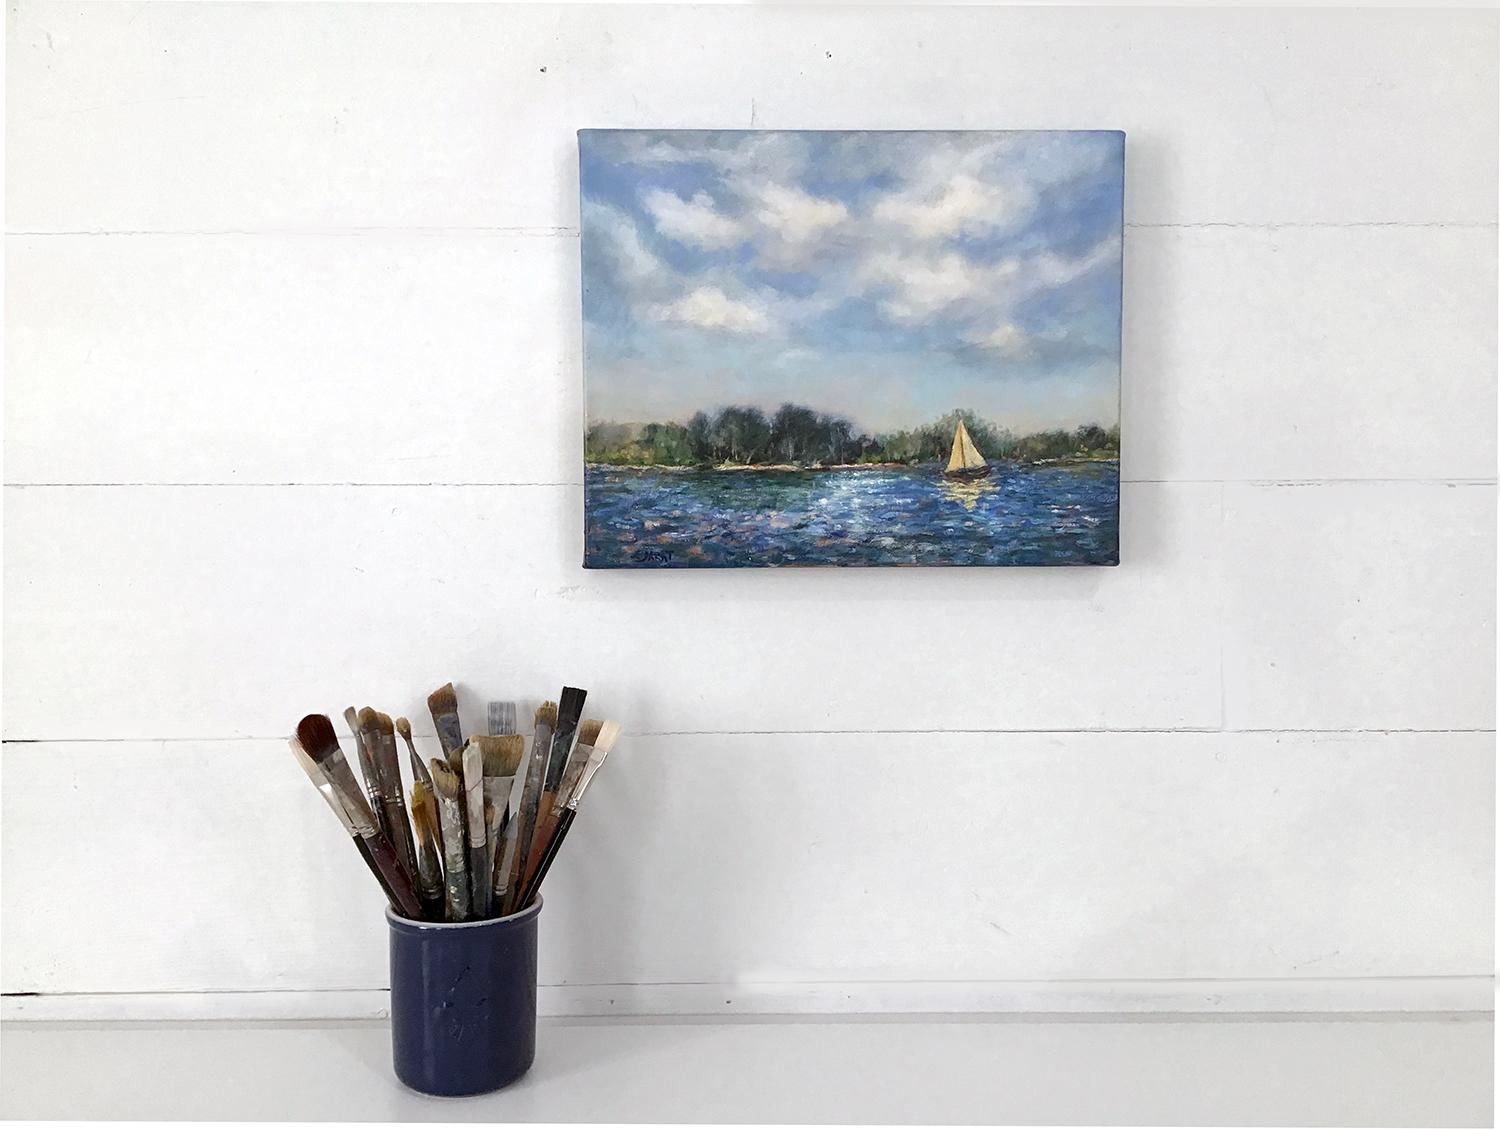 <p>Kommentare des Künstlers<br>Wogende Wolken schweben über einem impressionistischen See. Das gelbe Segel eines einsamen Bootes spiegelt sich auf dem kabbeligen Wasser und fängt das Wechselspiel von Licht und Textur ein. Die überwiegend kühle